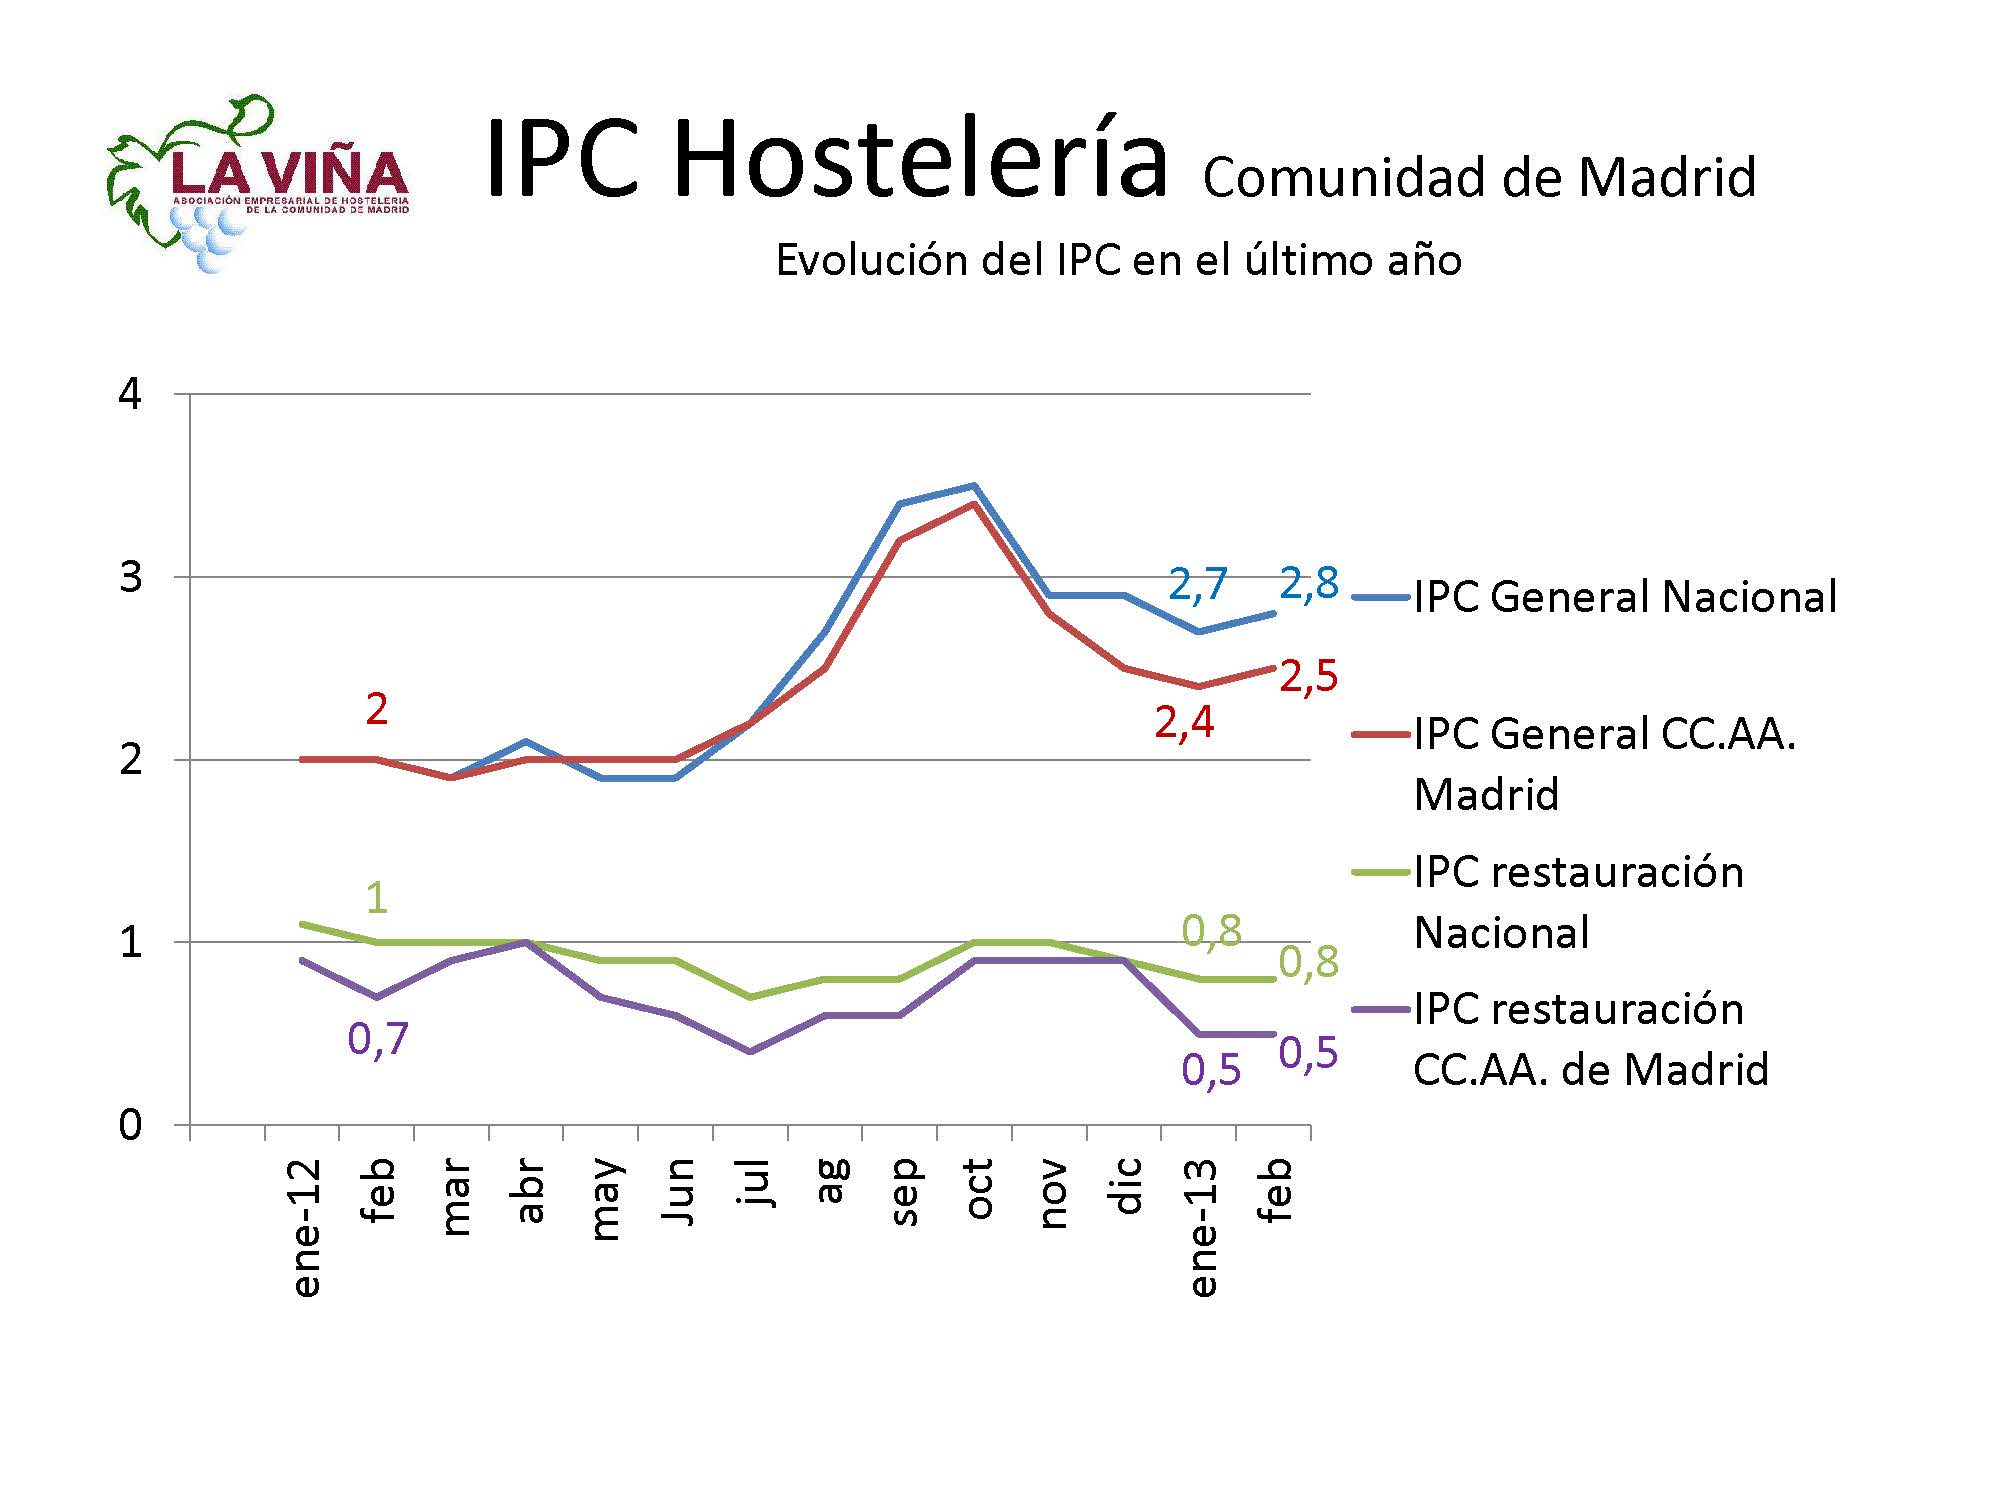 Los precios de bares y rtes. madrileños suben en febrero un 0,5% frente al 2,5% del IPC regional - La Viña